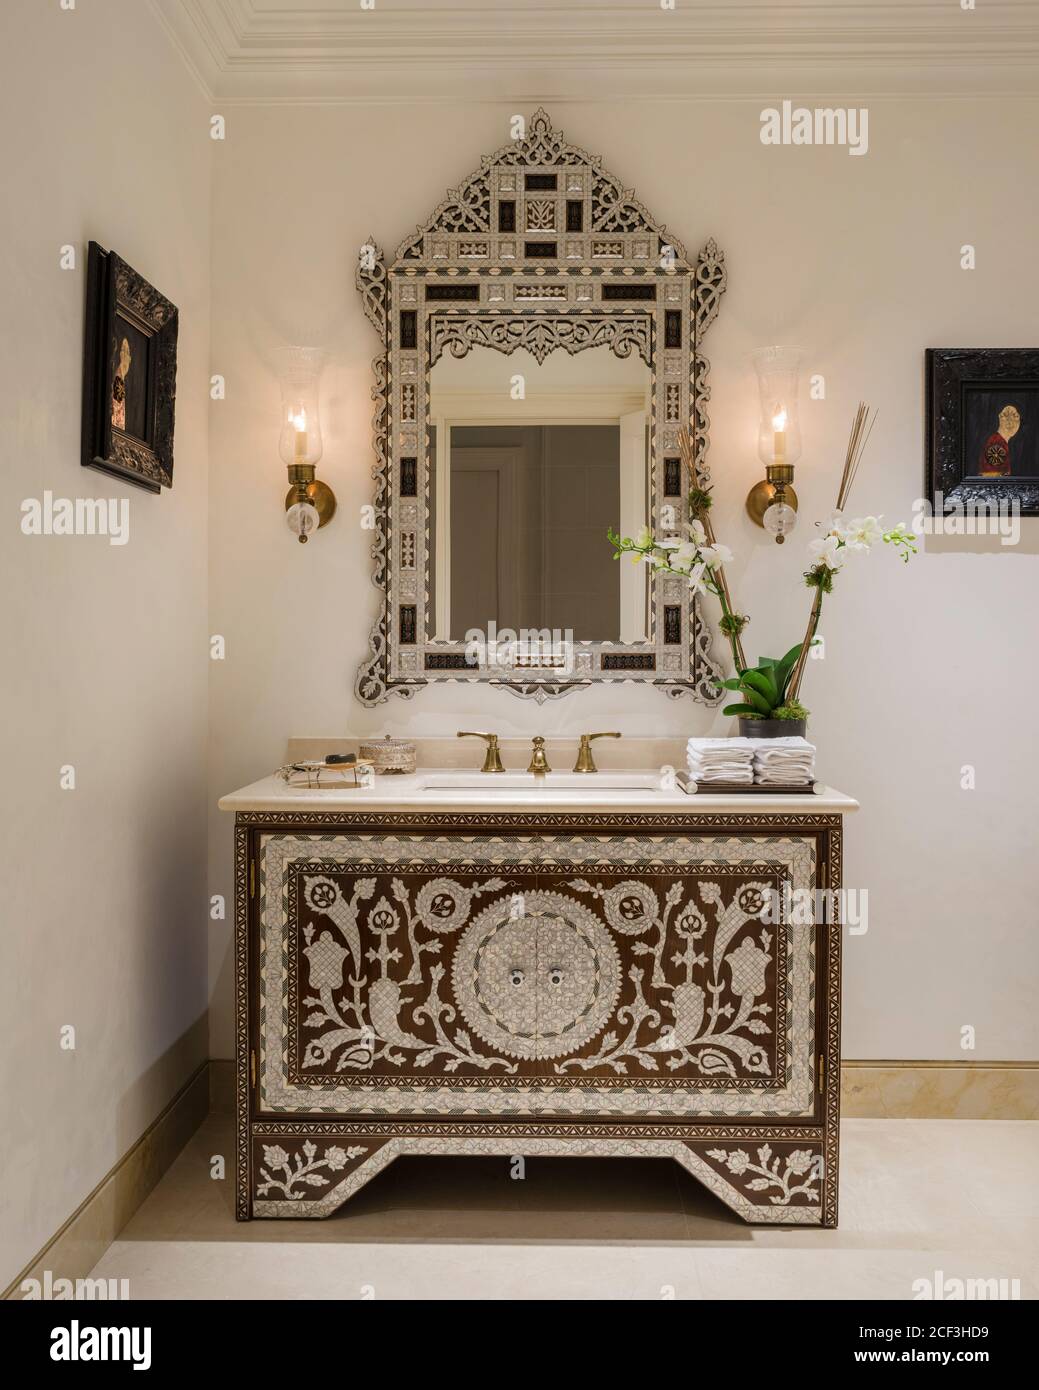 Mirror over washbasin in Arabic bathroom Stock Photo